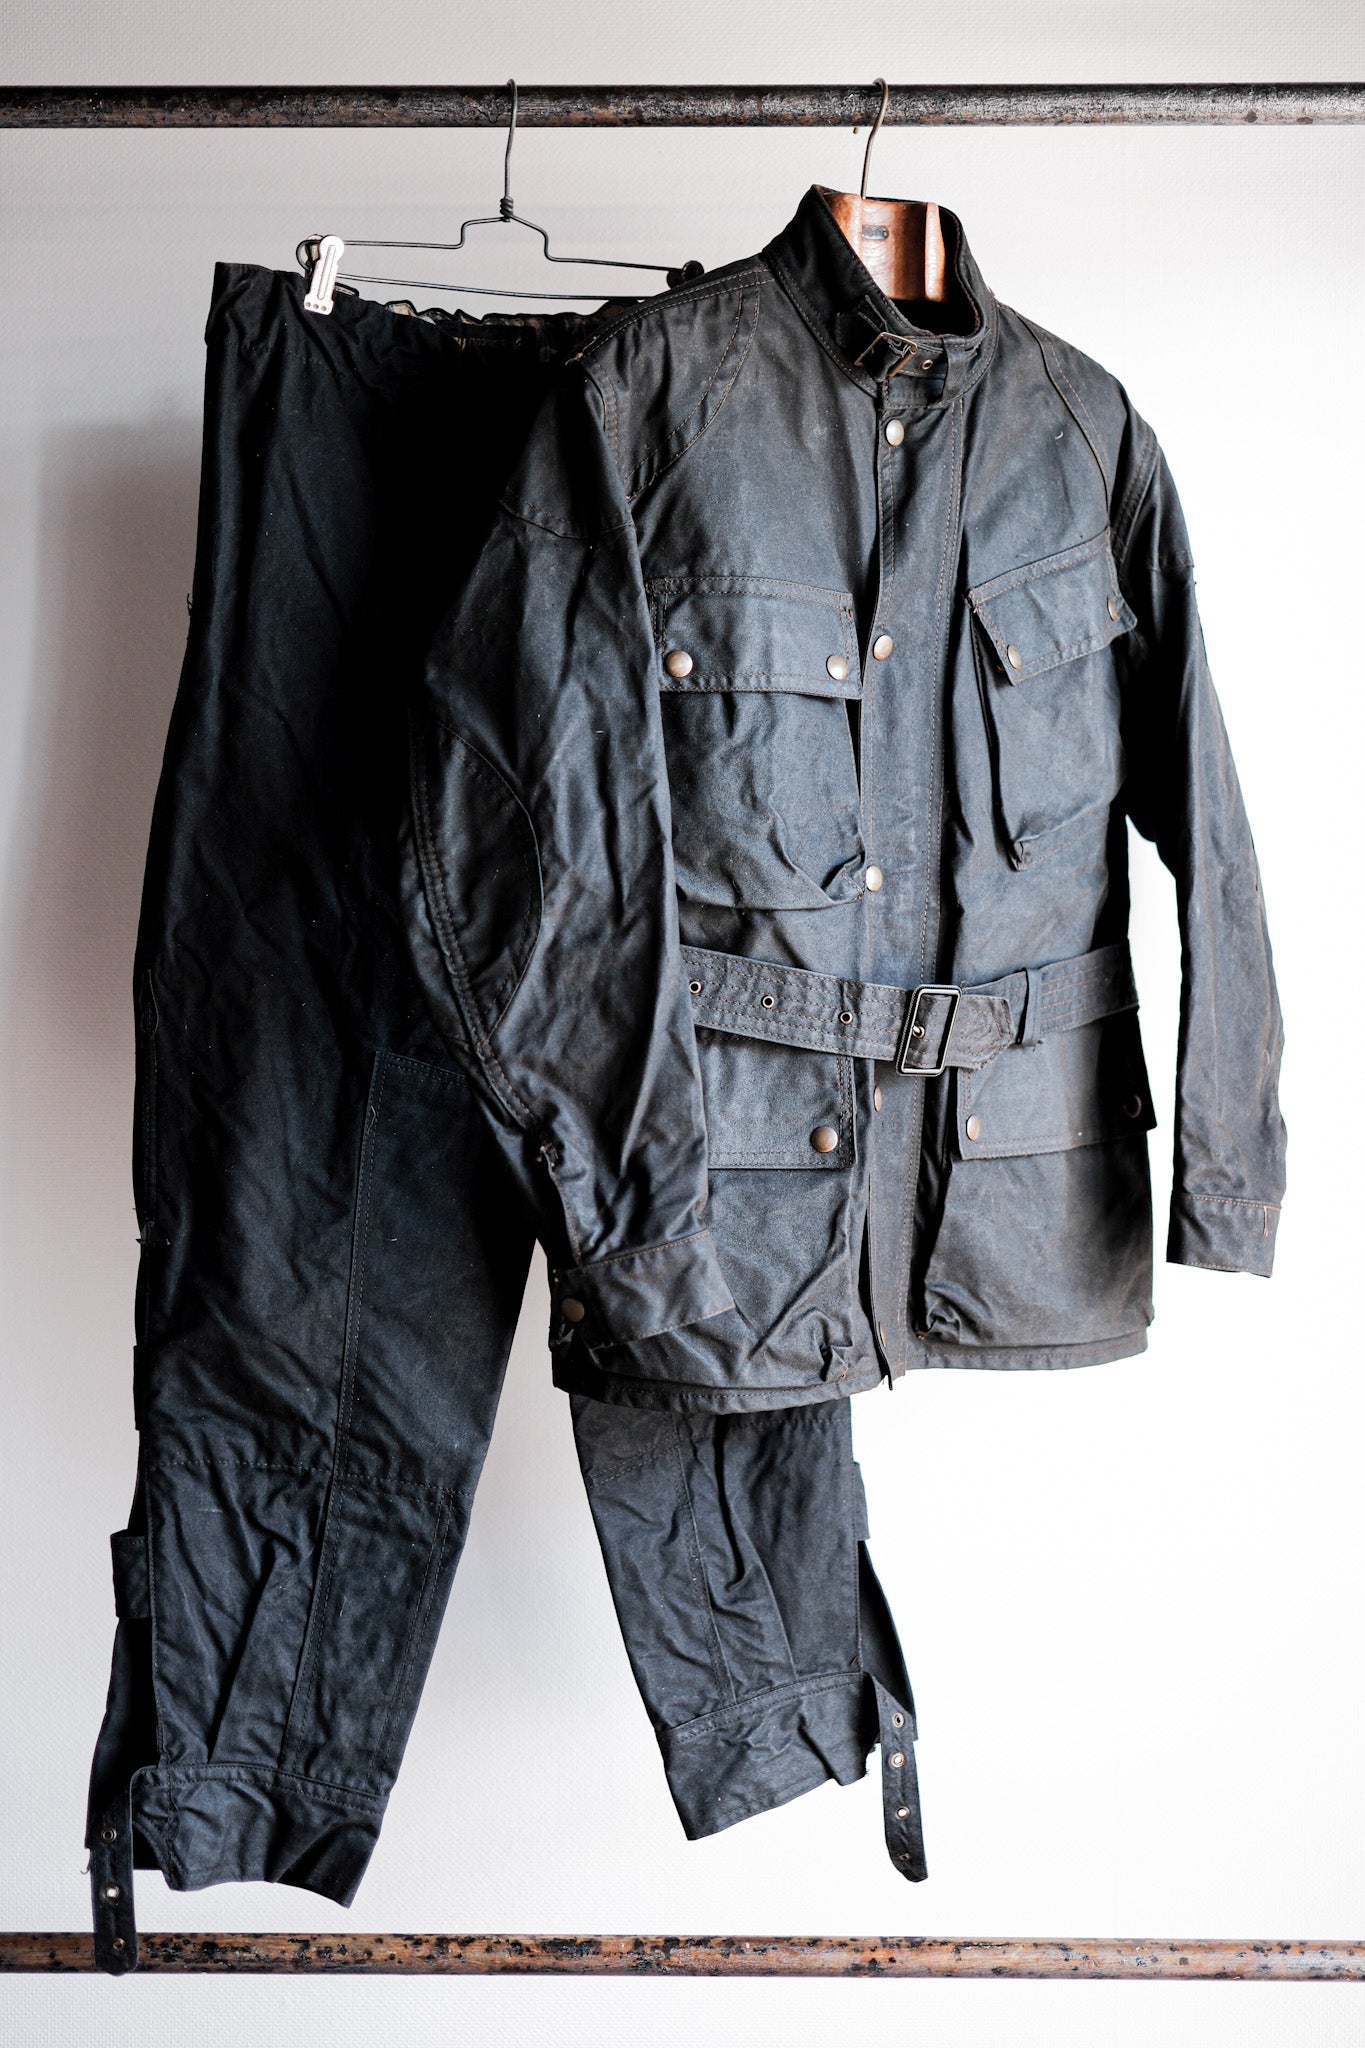 [〜60年代]老式貝爾斯塔夫（Belstaff）打蠟的外套和褲子設置了大小。38“試驗員”